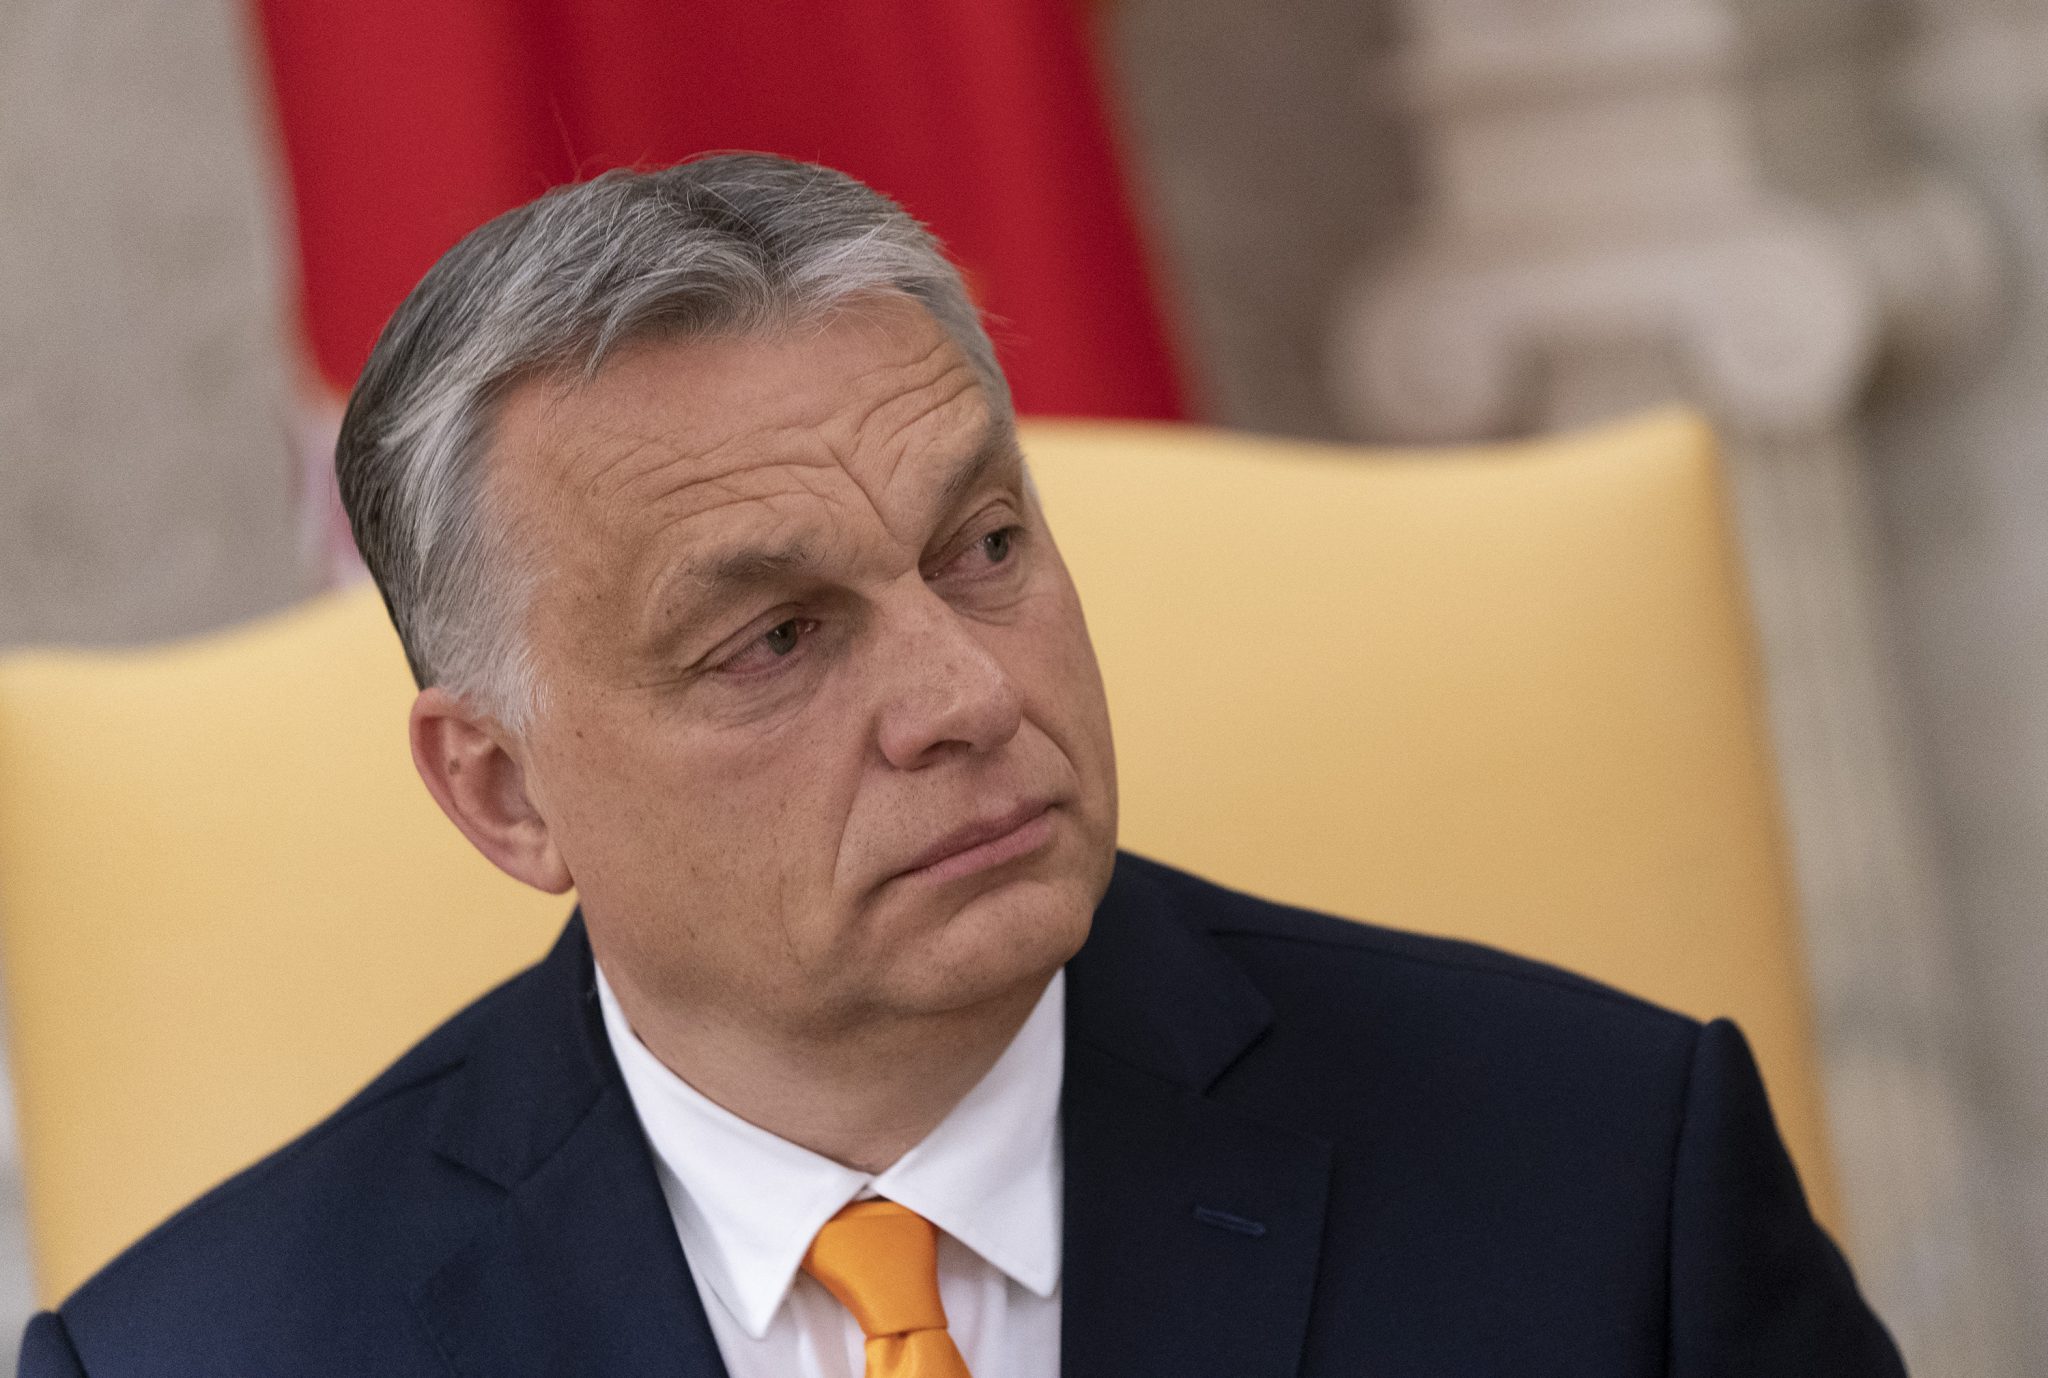 Ungarns Ministerpräsident Viktor Orbán: Sein Land wünsche keine kulturelle Veränderung durch moslemische Migranten